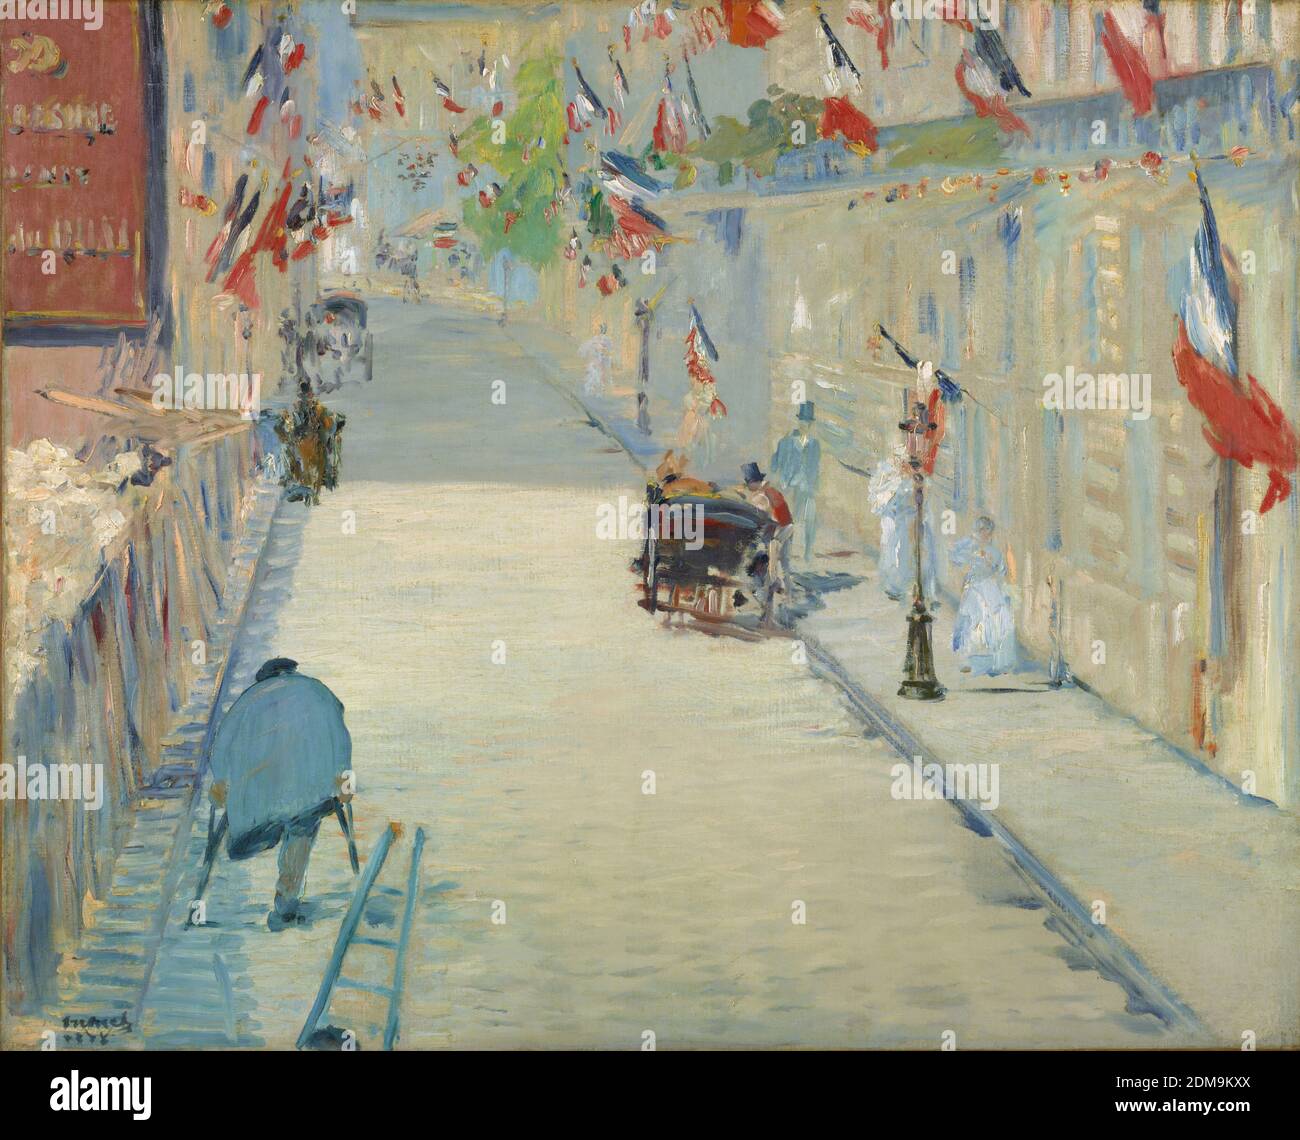 Die Rue Mosnier mit Flaggen 1878 Französische modernistische Malerei von Édouard Manet - sehr hohe Auflösung und Qualität Bild Stockfoto